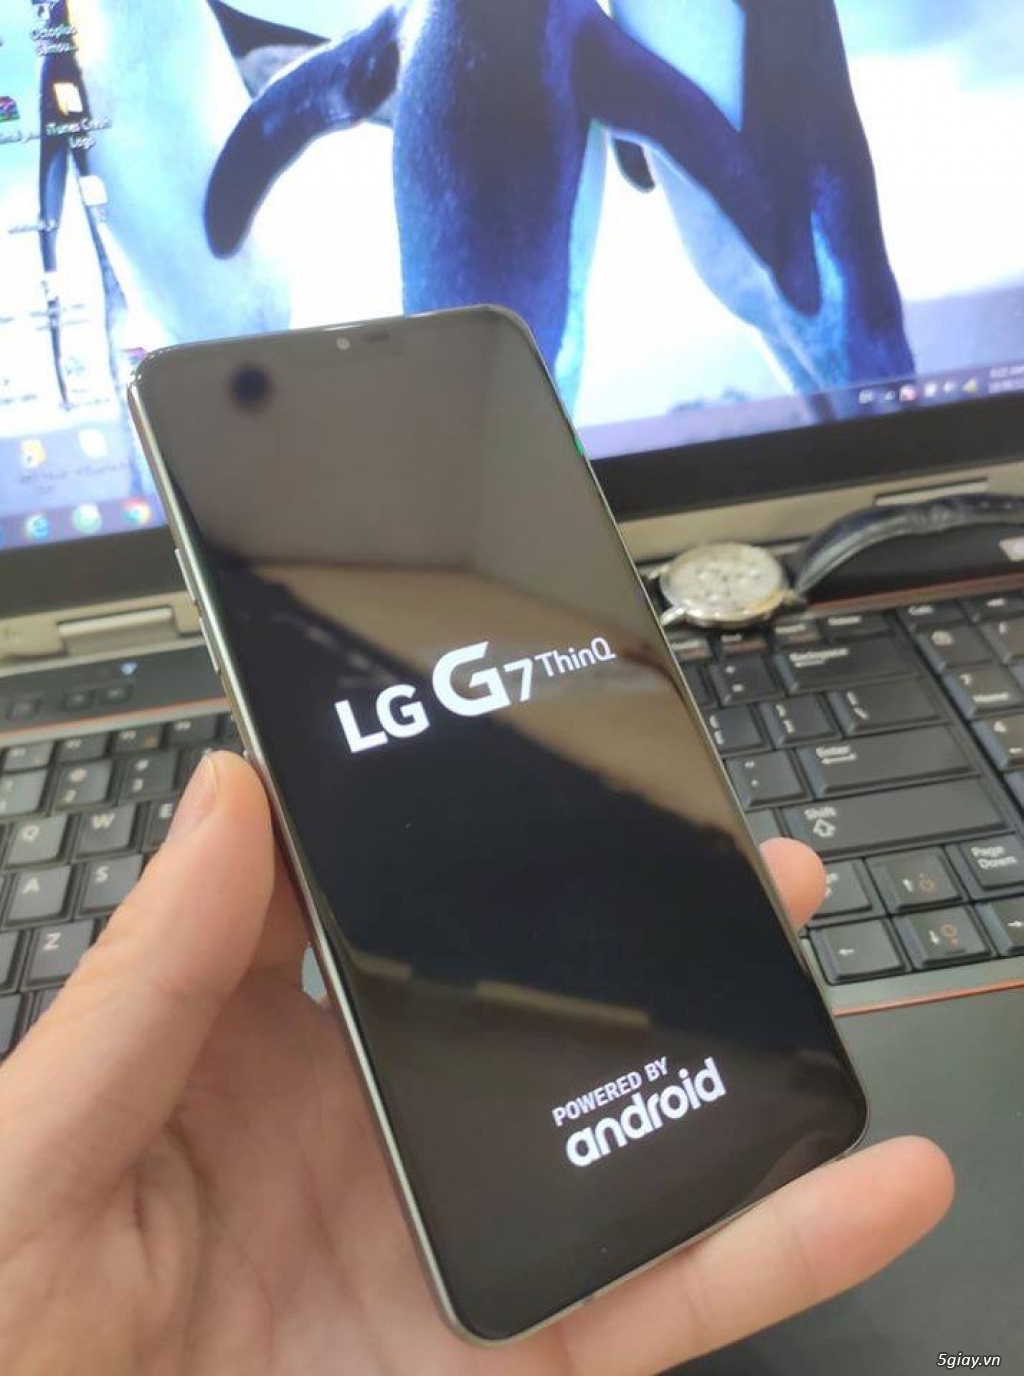 LG G7 thinQ hàng nhập khẩu likenew 99% cam kết nguyên zin bao đẹp - 4